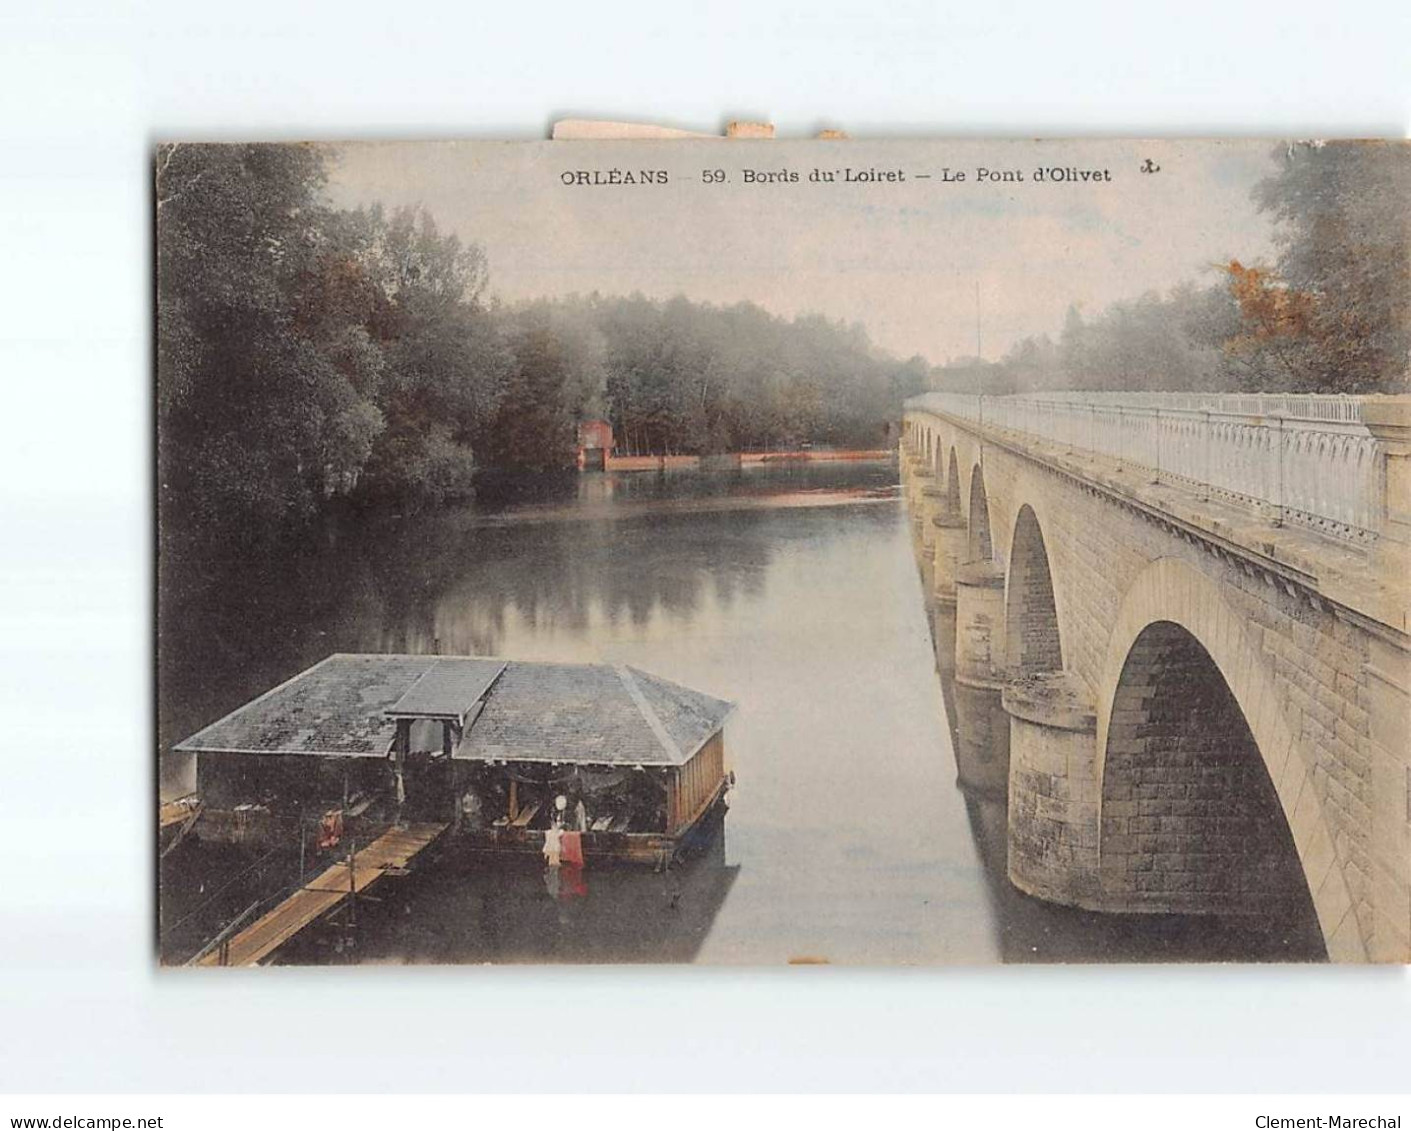 ORLEANS : Bords Du Loiret, Le Pont D'Olivet - état - Orleans